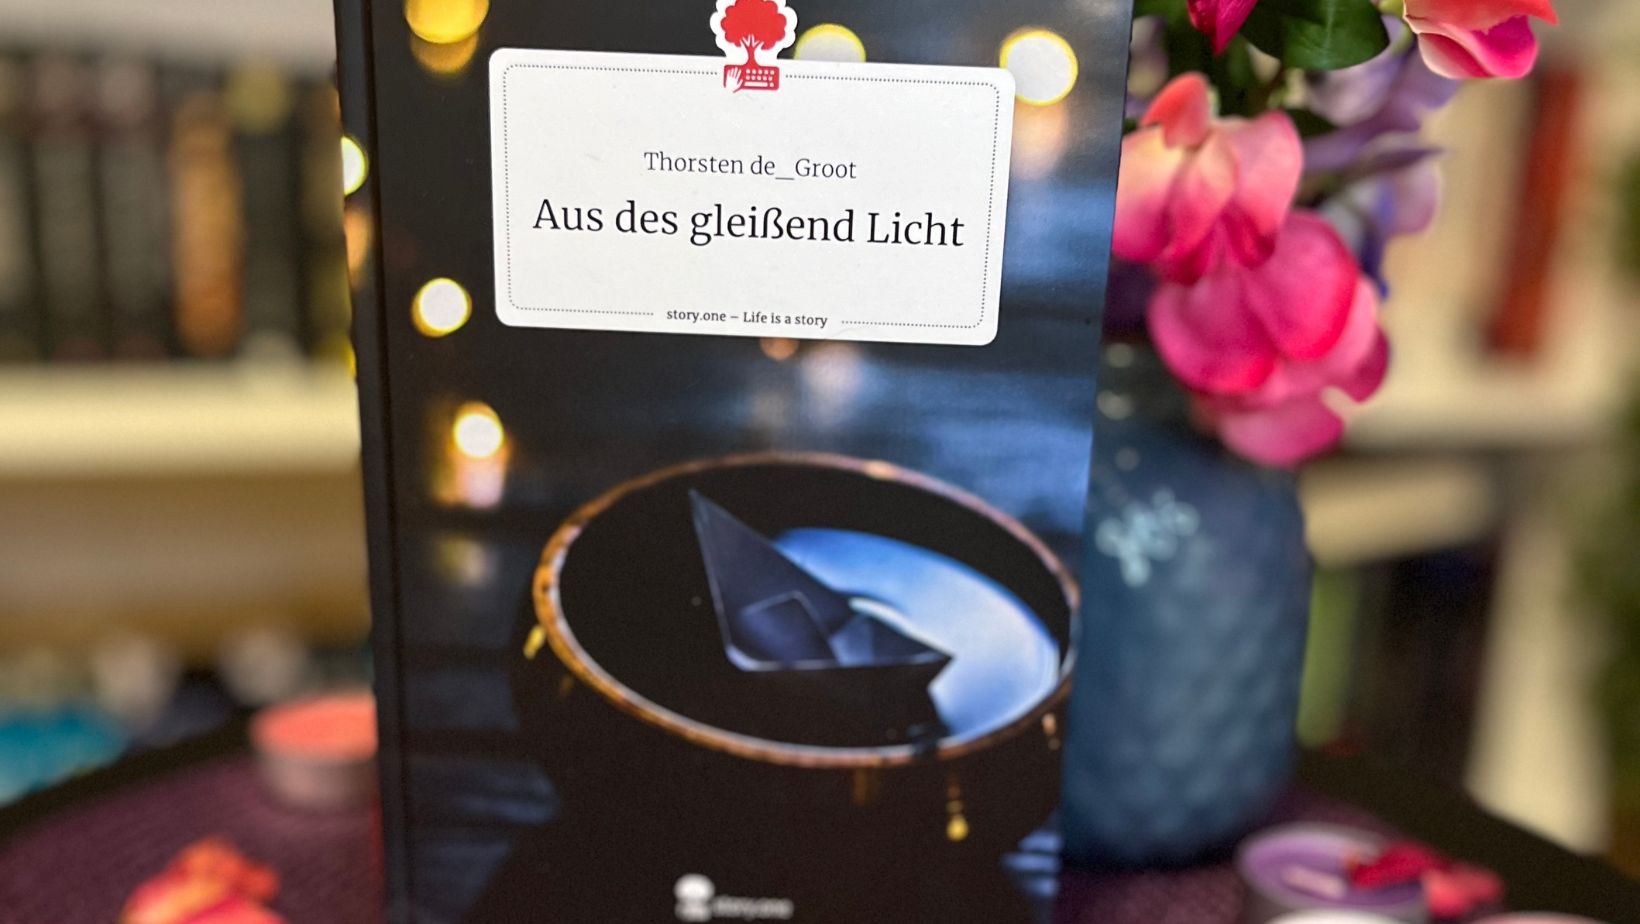 Das Bild zeigt ein Buch mit dem Titel "Aus des gleißend Licht" von Thorsten de Groot. Das Buch steht aufrecht auf einem Tisch, der mit einem lila Tuch bedeckt ist. Um das Buch herum liegen getrocknete Rosenblätter und mehrere Teelichter in verschiedenen Farben. Im Hintergrund sind unscharf Bücherregale und eine Vase mit rosa und lila Blumen zu sehen.